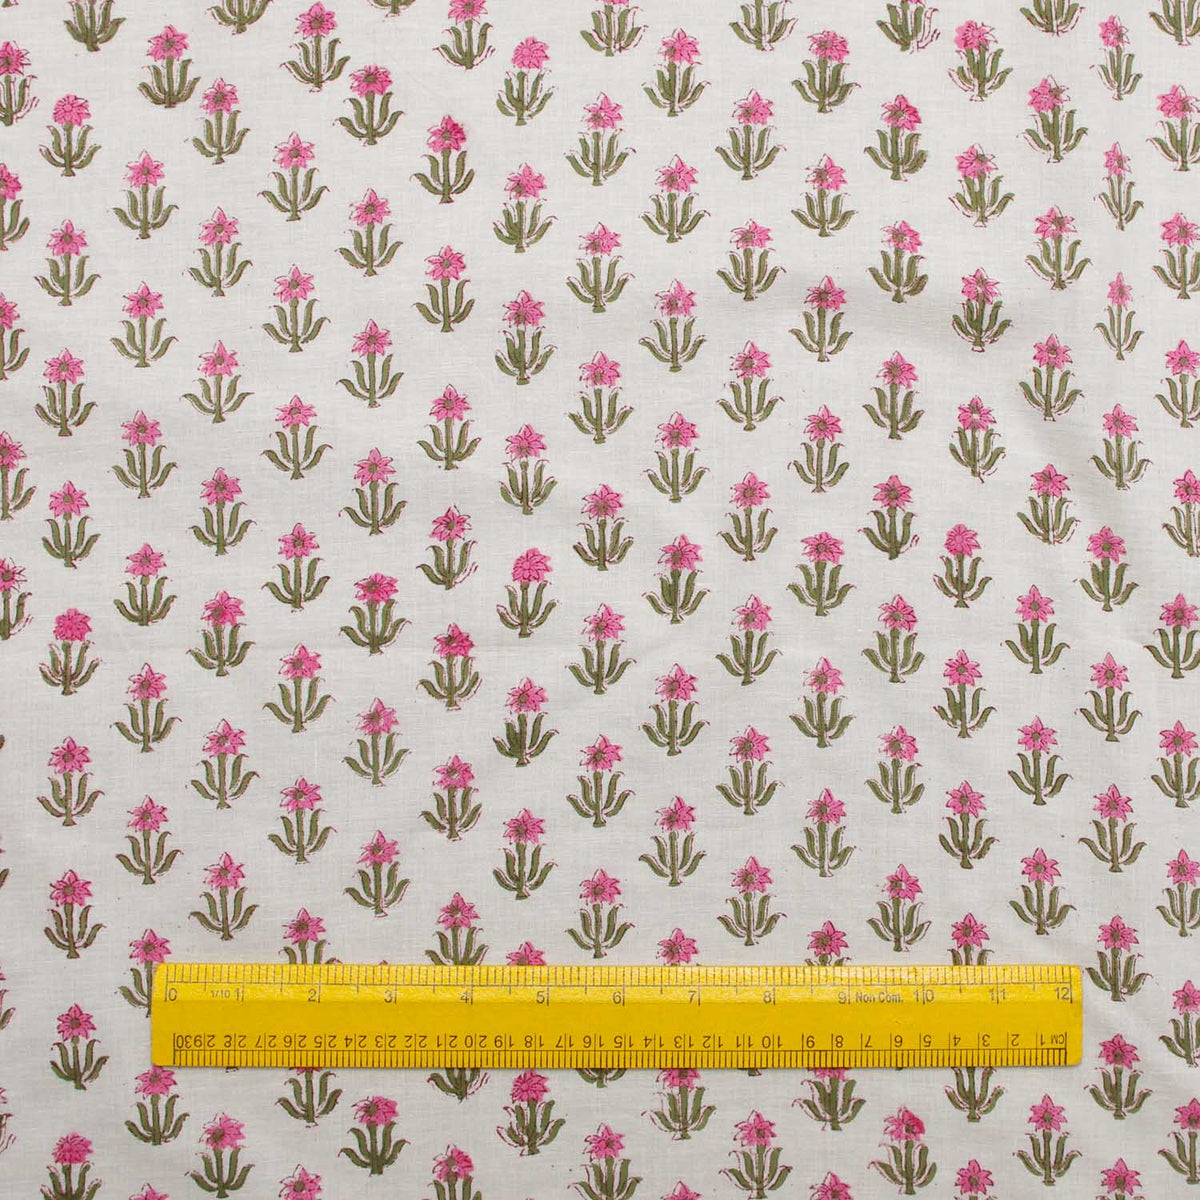 Indischer Handblock gedruckte kleine rosa Blumen Baumwollfrauen-Kleiderstoff-Design 207